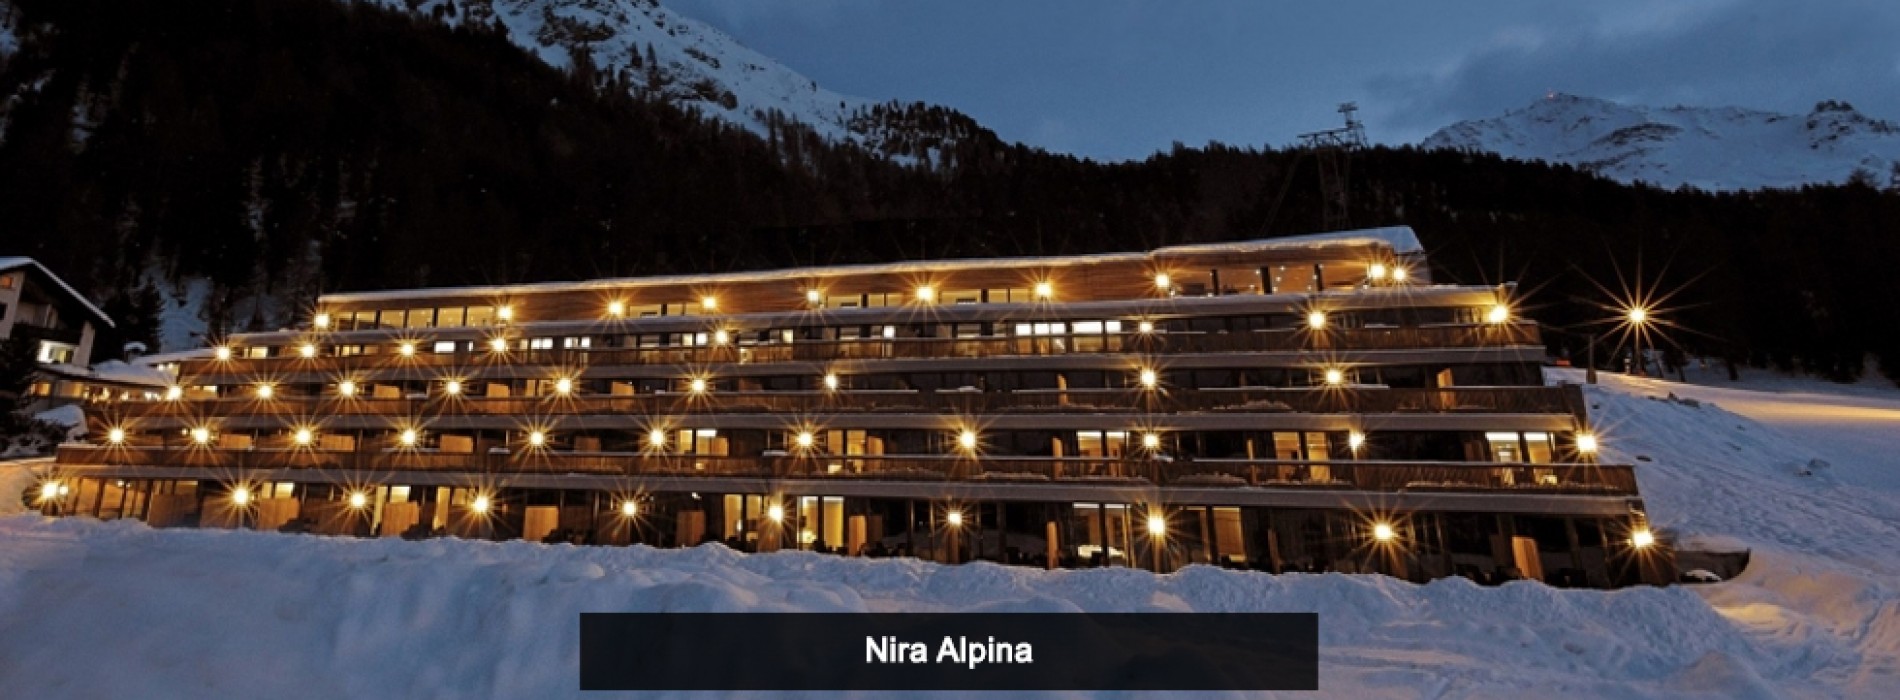 Enjoy a Romantic Getaway with Nira Alpina